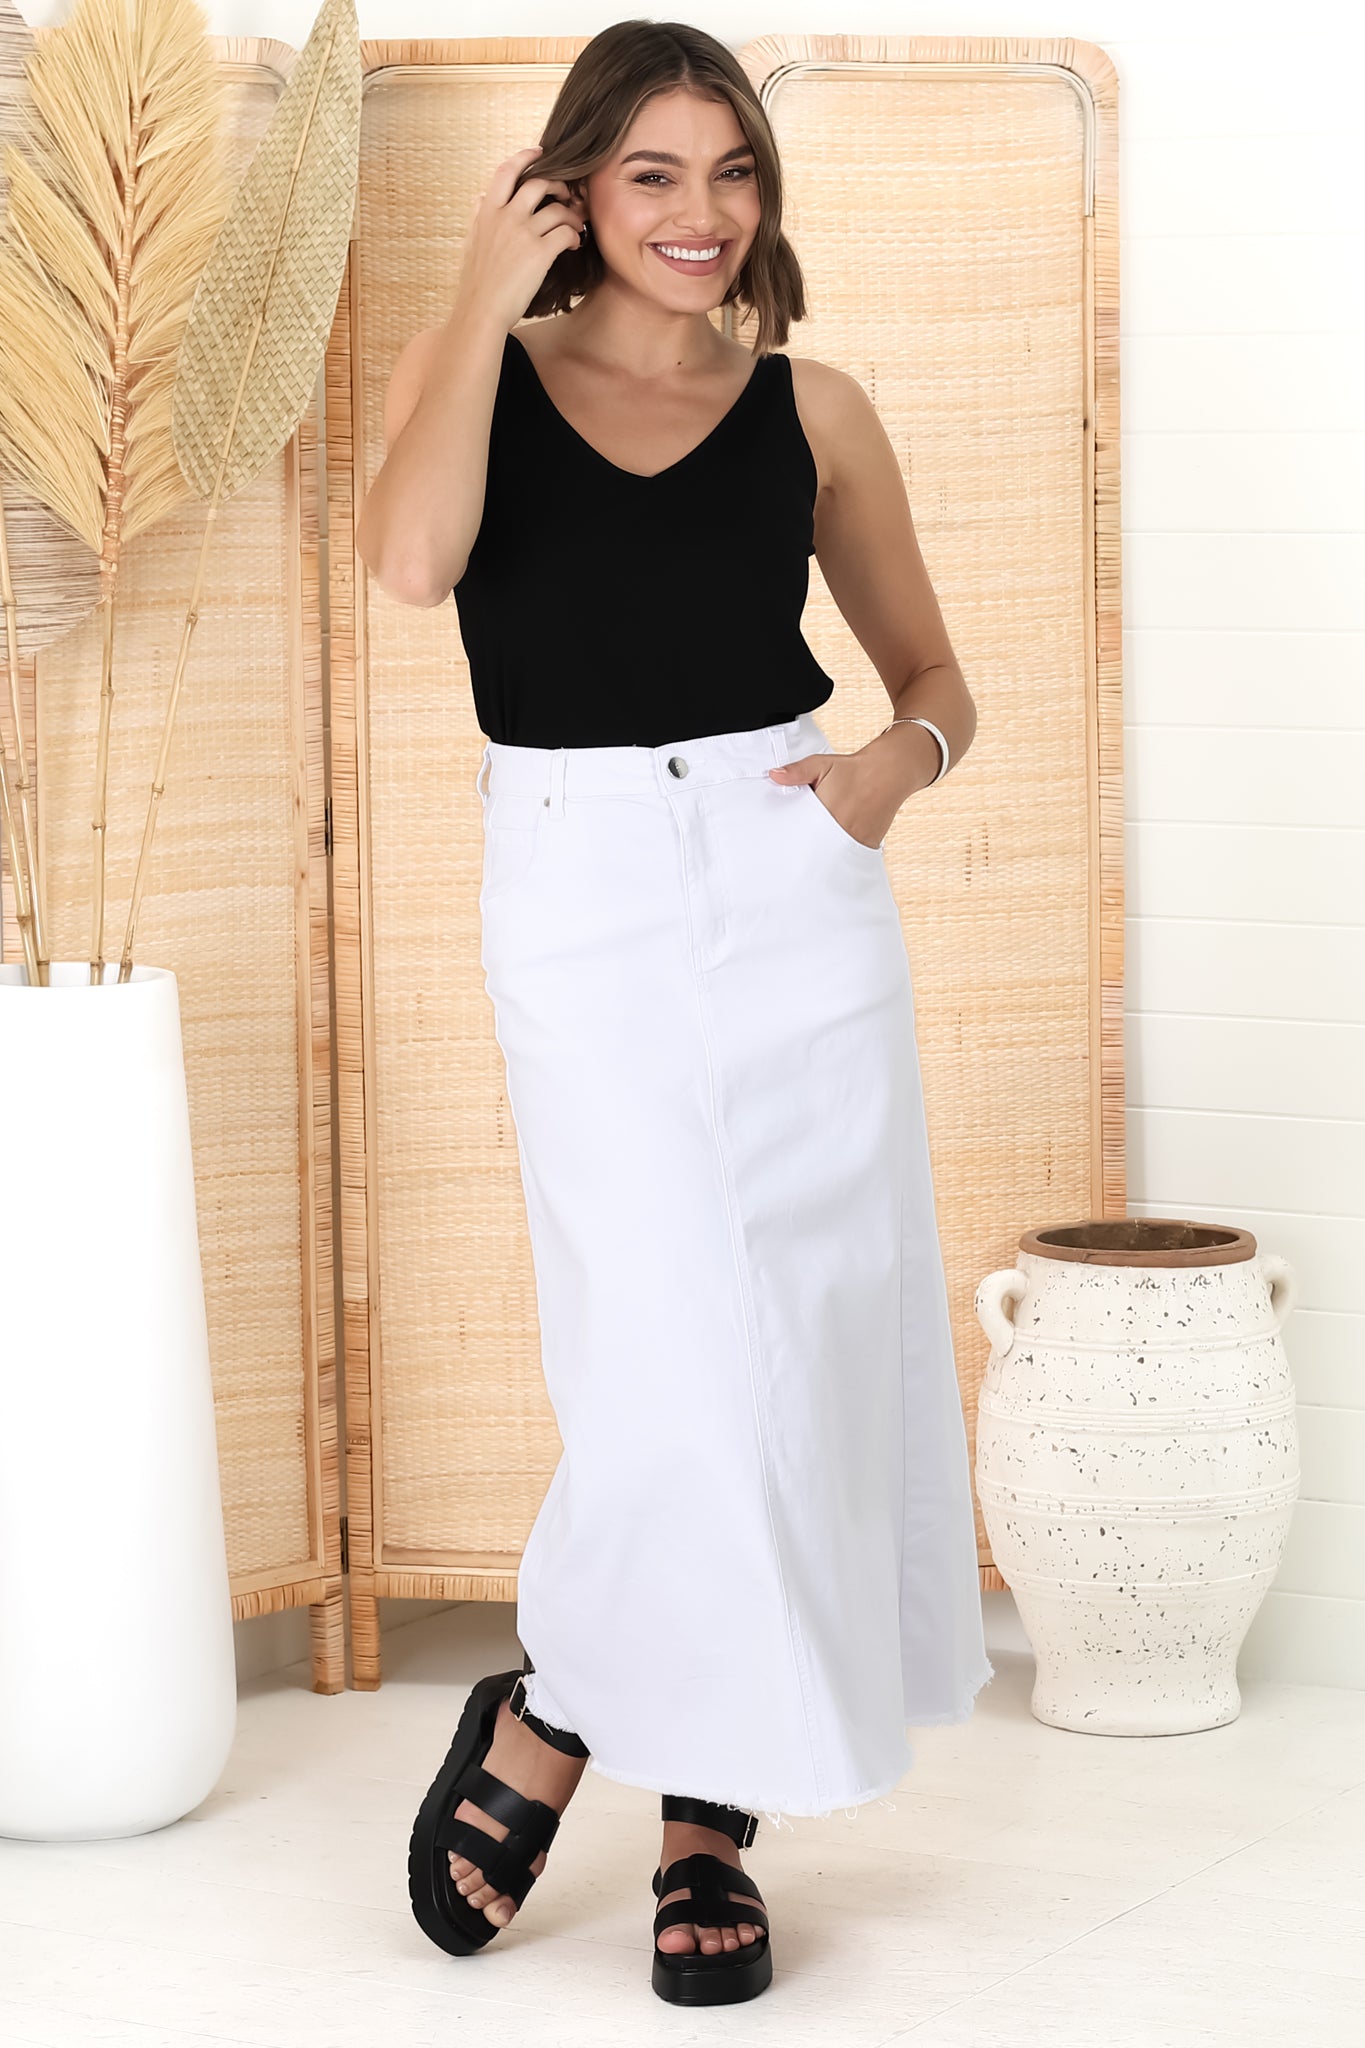 Granger Denim Maxi Skirt - High Waist Stretchy A-Line Skirt in White